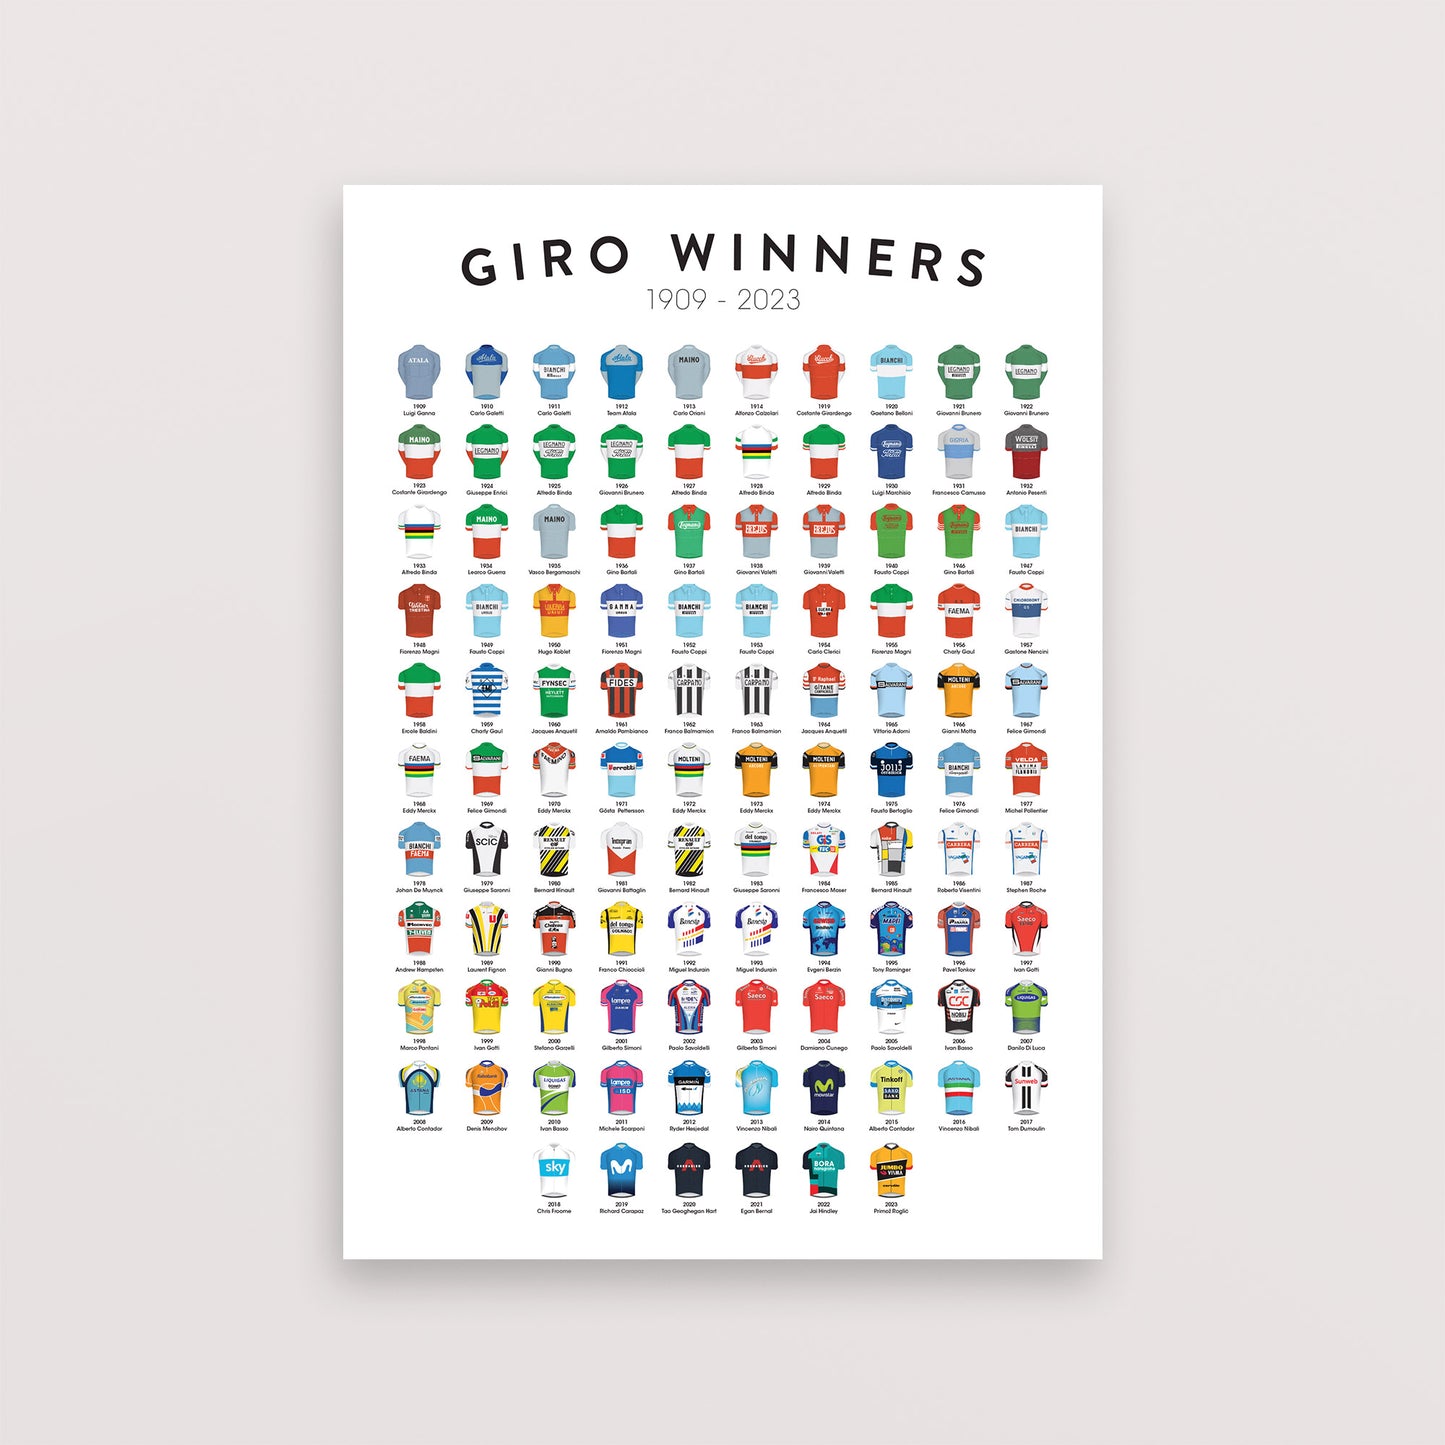 Giro Winners